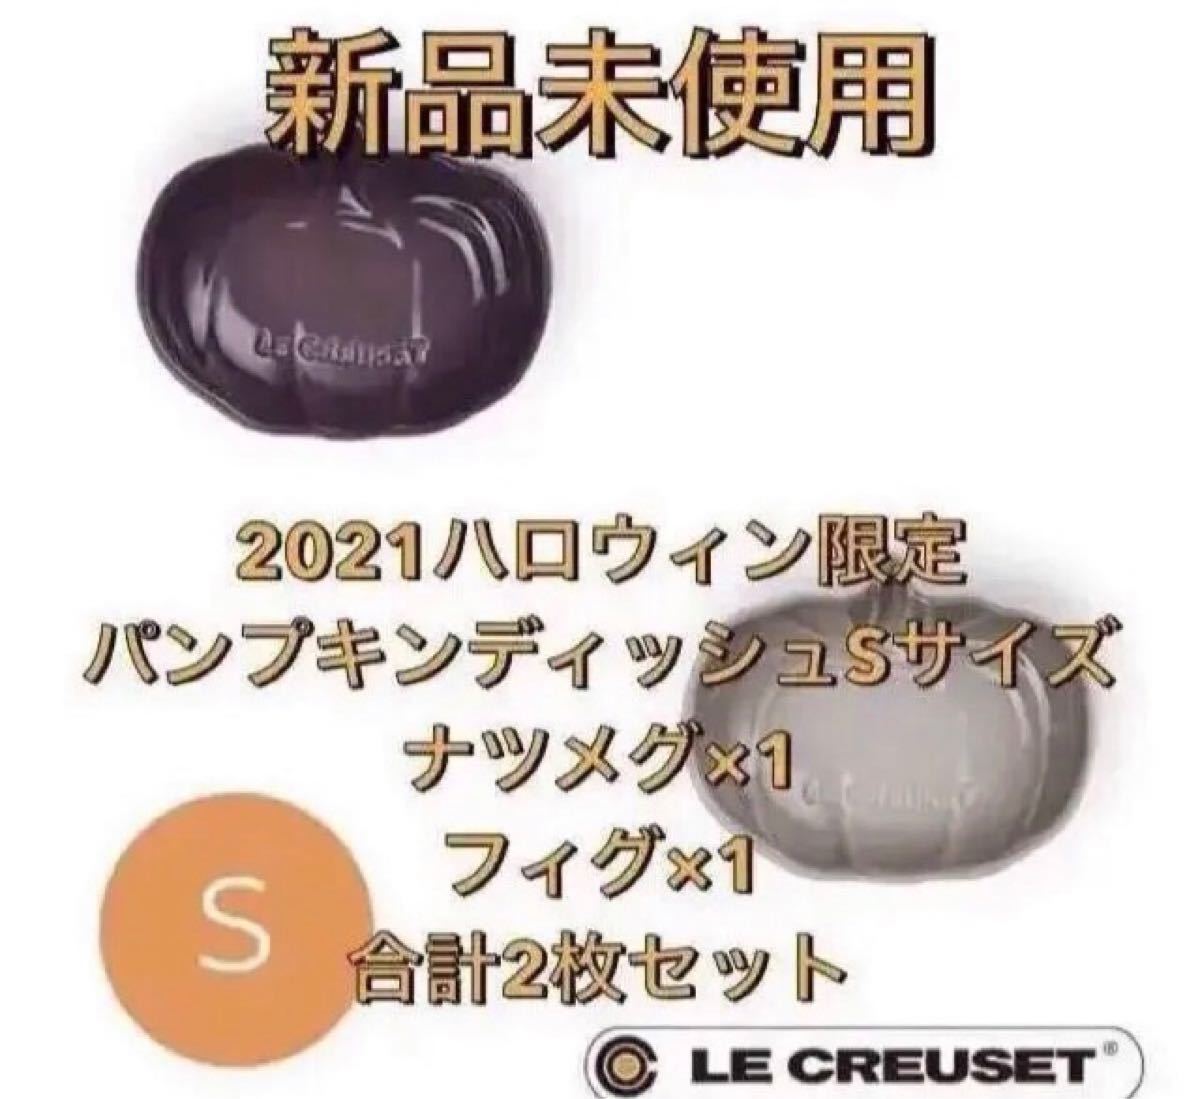 【限定品】新品未使用 ル・クルーゼ パンプキン・ディッシュ Sサイズ 2枚